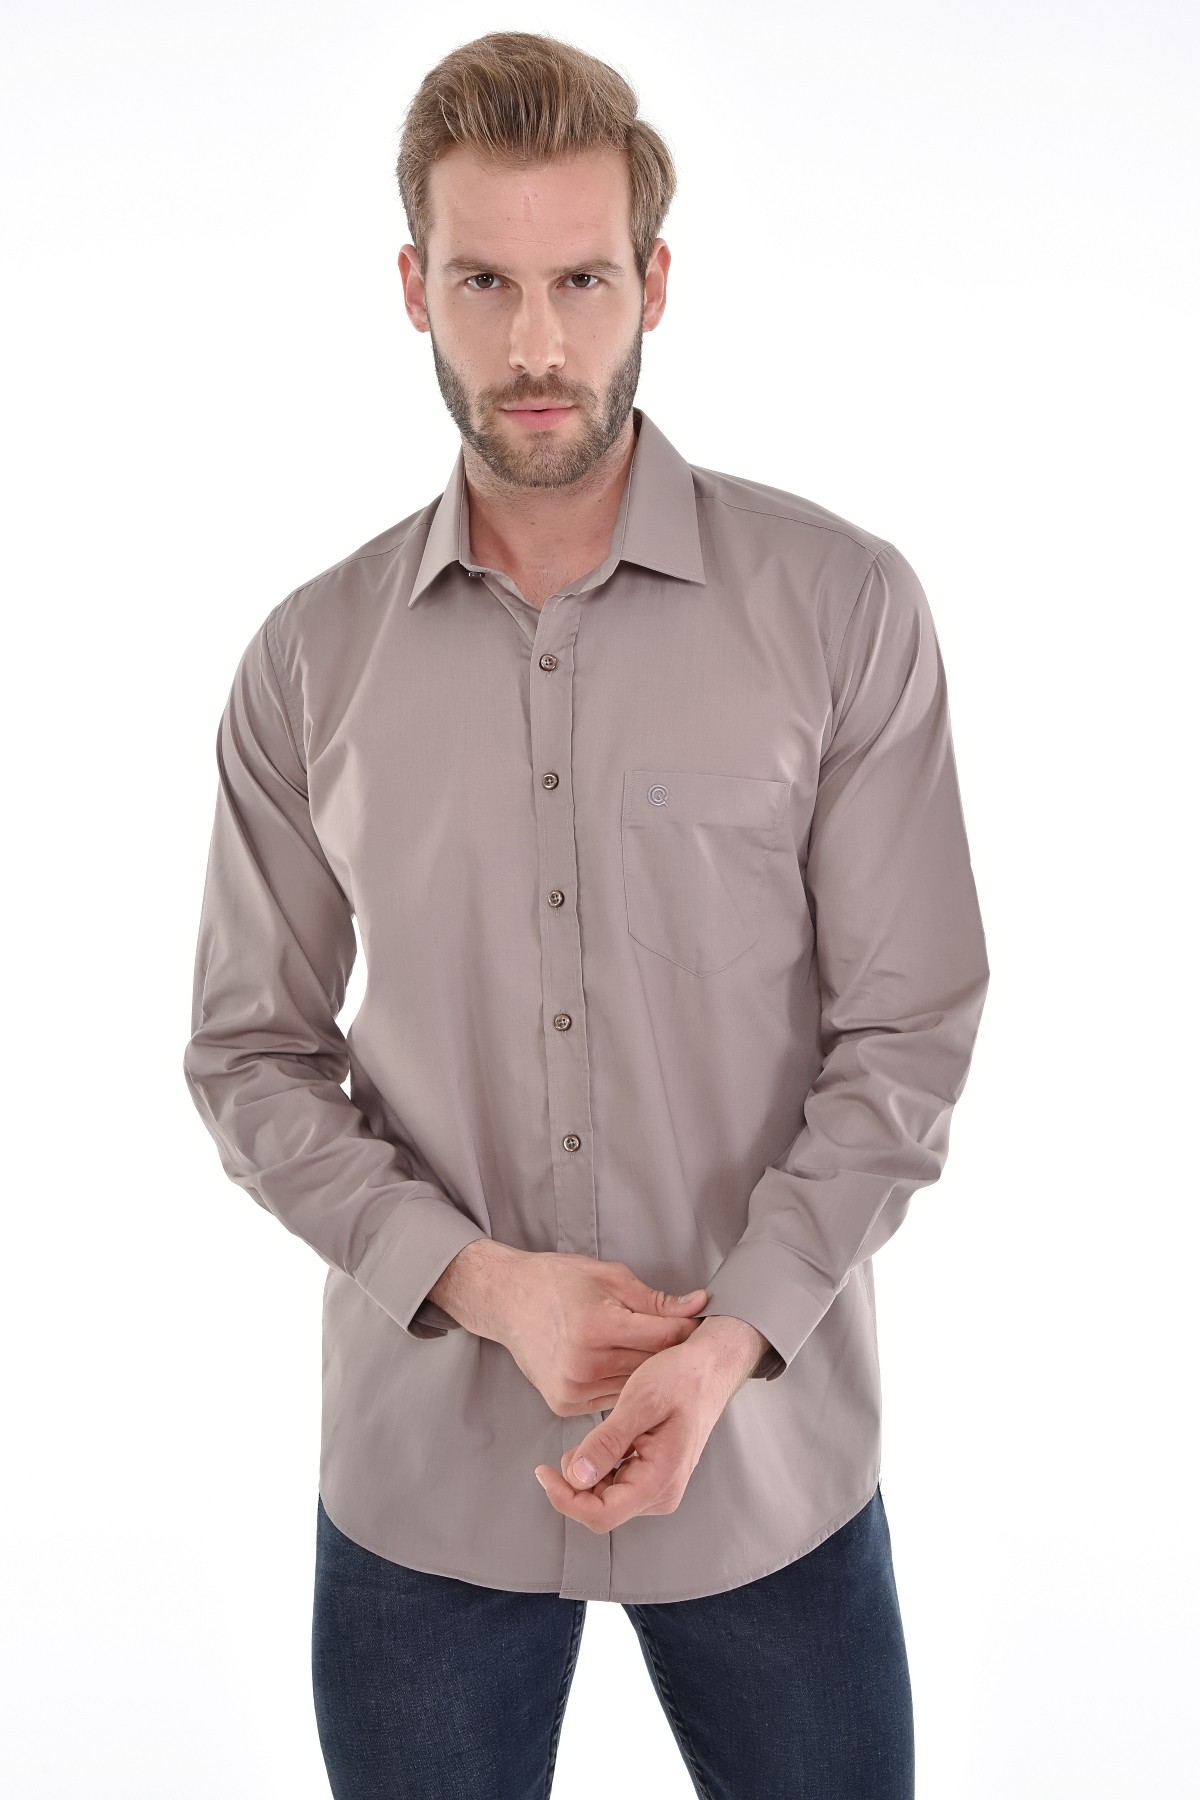 Çizgi Triko Cepli Klasik Kalıp Düz Renk Uzun Kollu Erkek Gömlek - VİZON